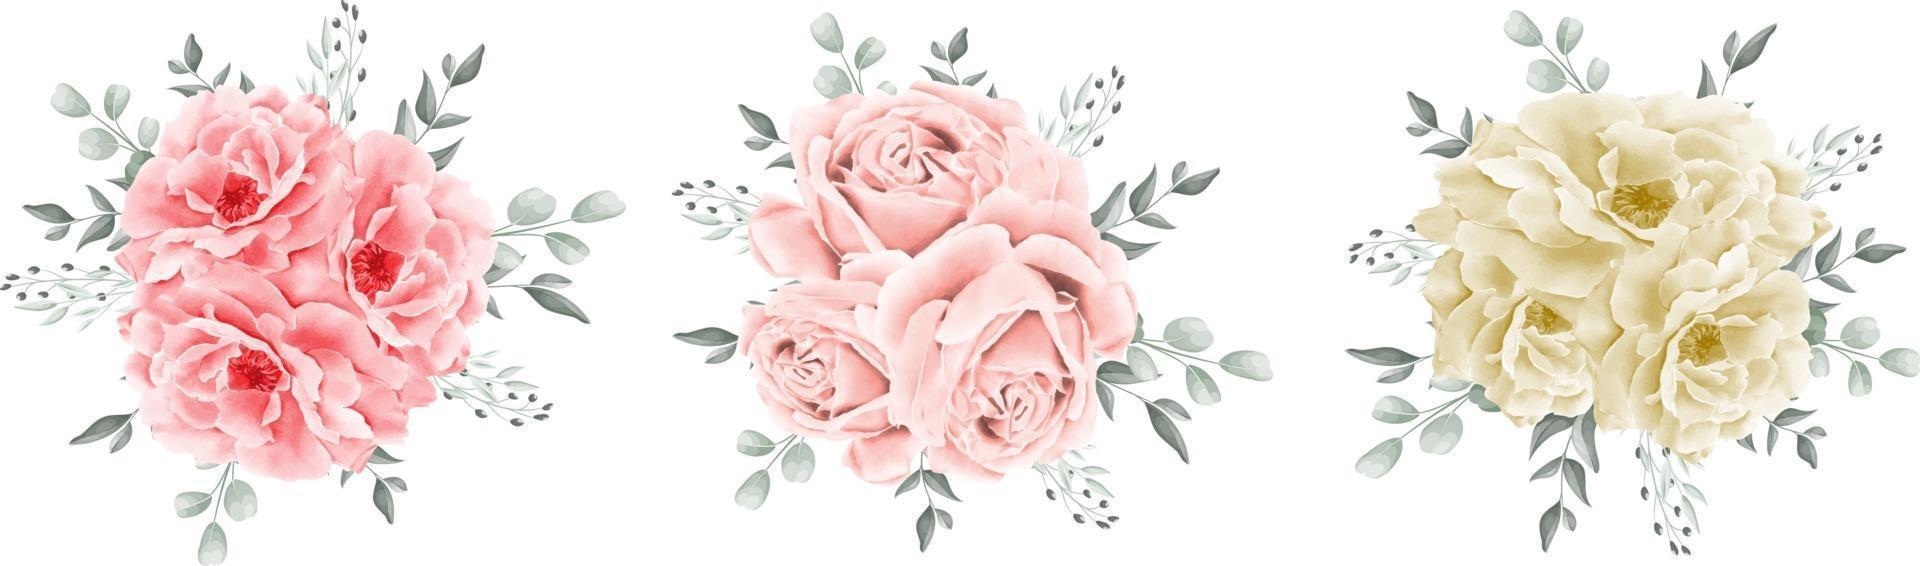 rozenboeket aquarel geïsoleerd op een witte achtergrond vector